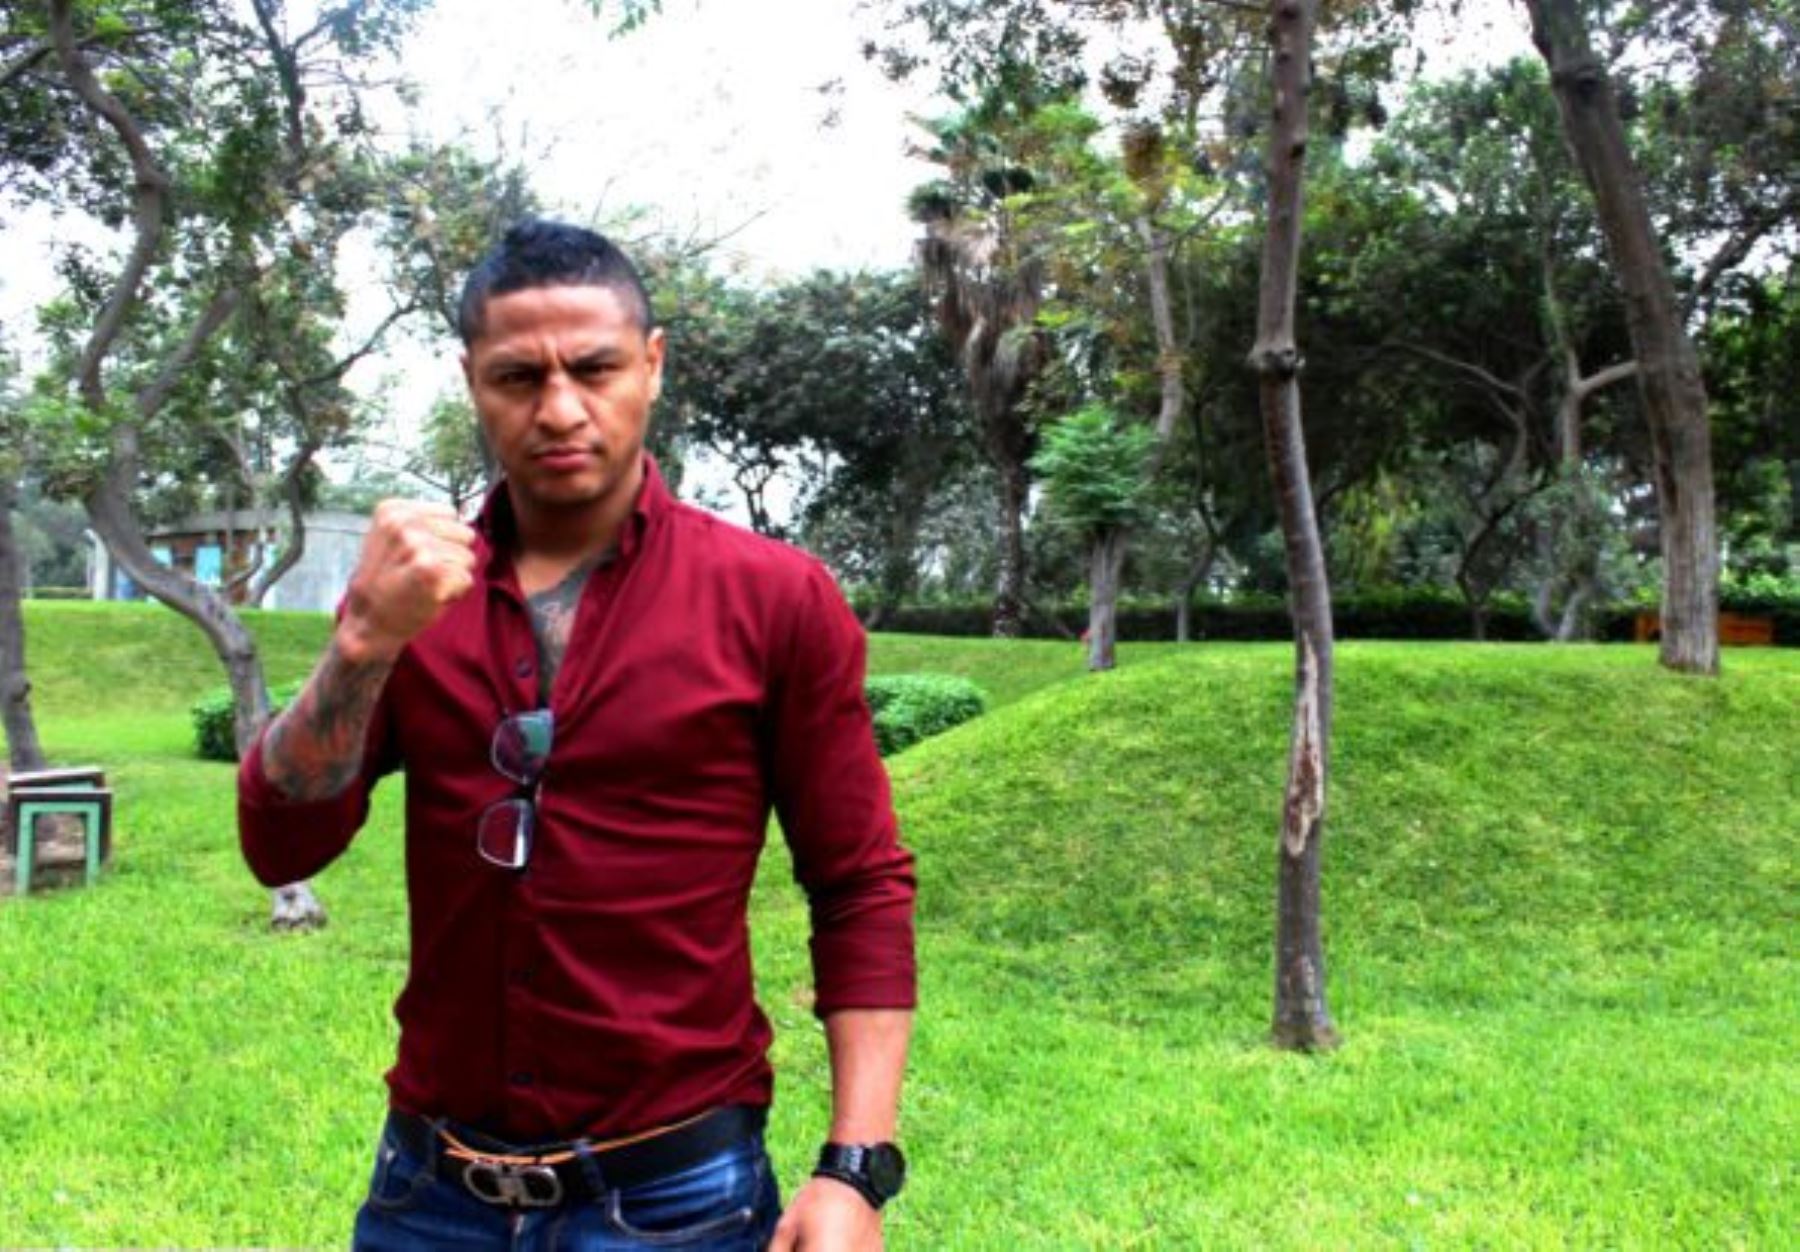 Boxeador Jonathan Maicelo es separado de la promoción de las prácticas deportivas del Gobierno Regional del Callao. Foto: ANDINA/difusión.